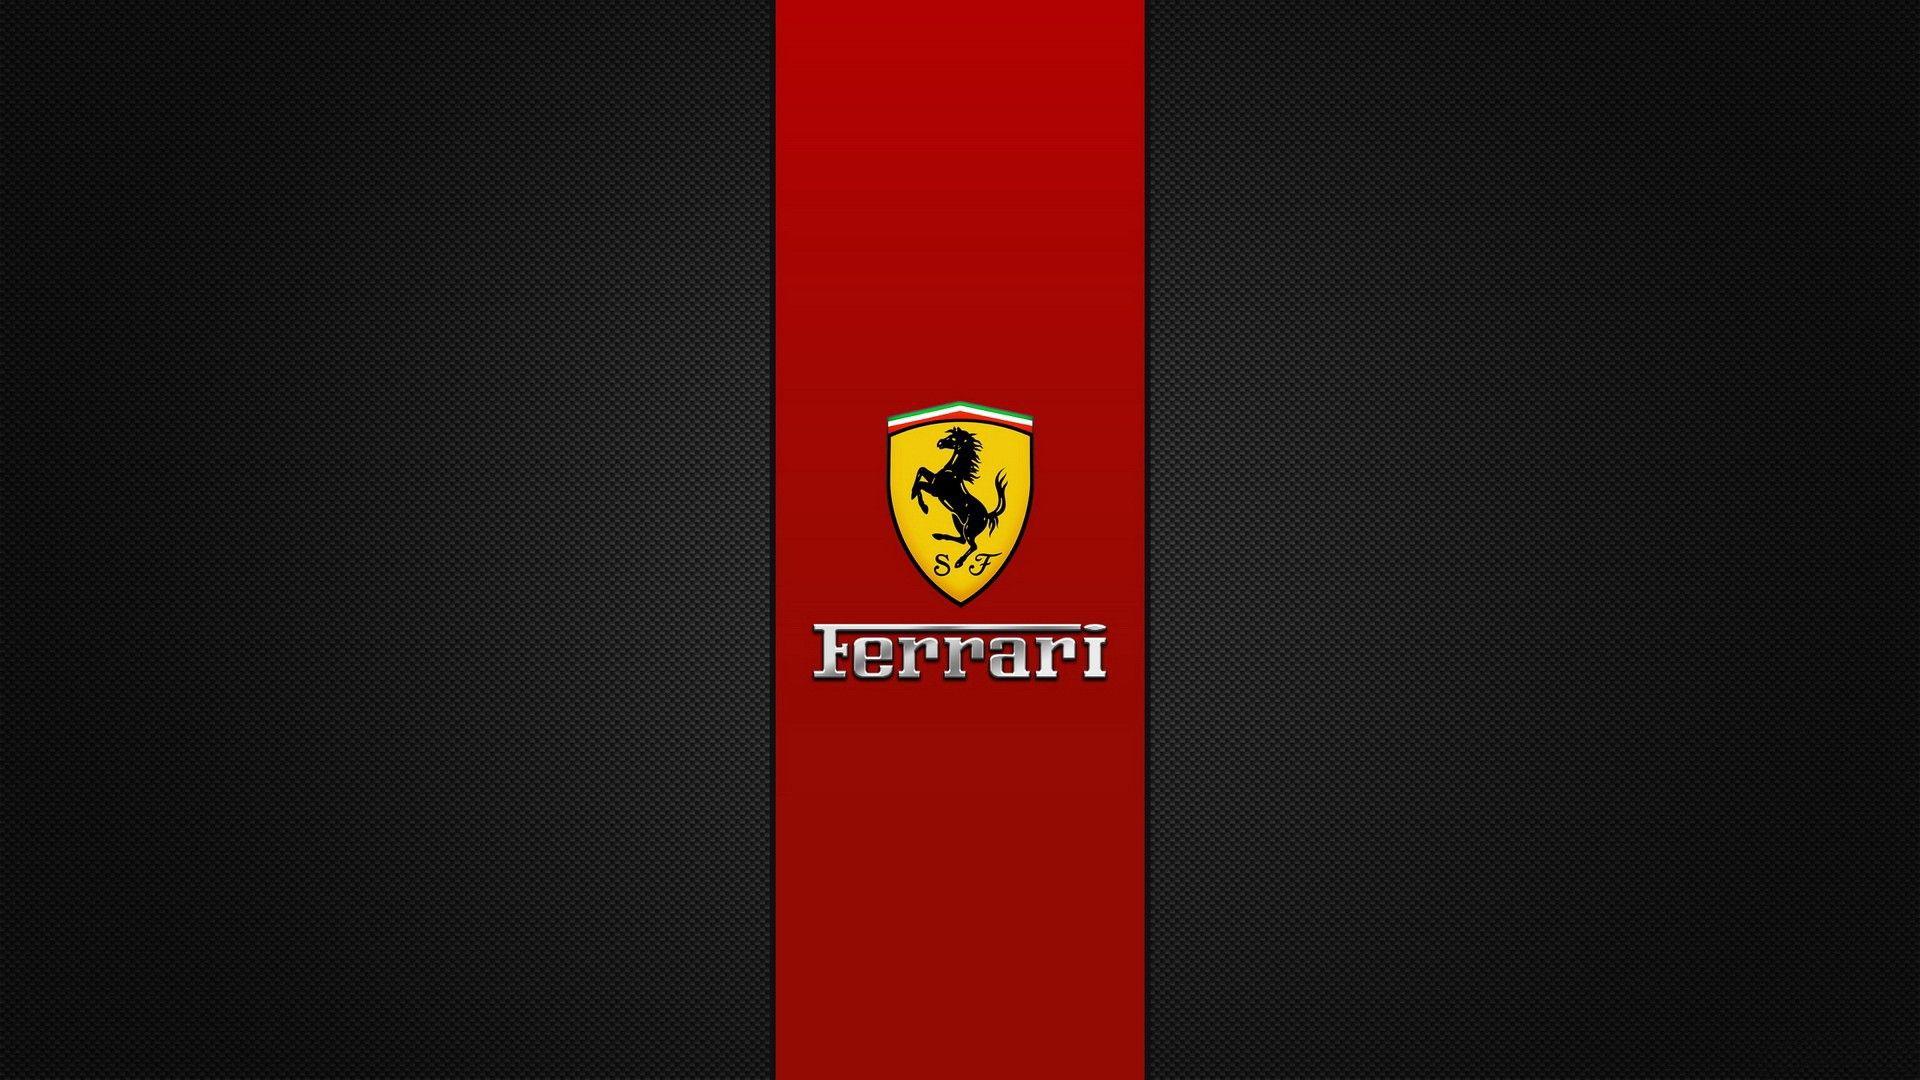 1920x1080 Hình nền Logo Ferrari tuyệt vời 36846 1920x1080px